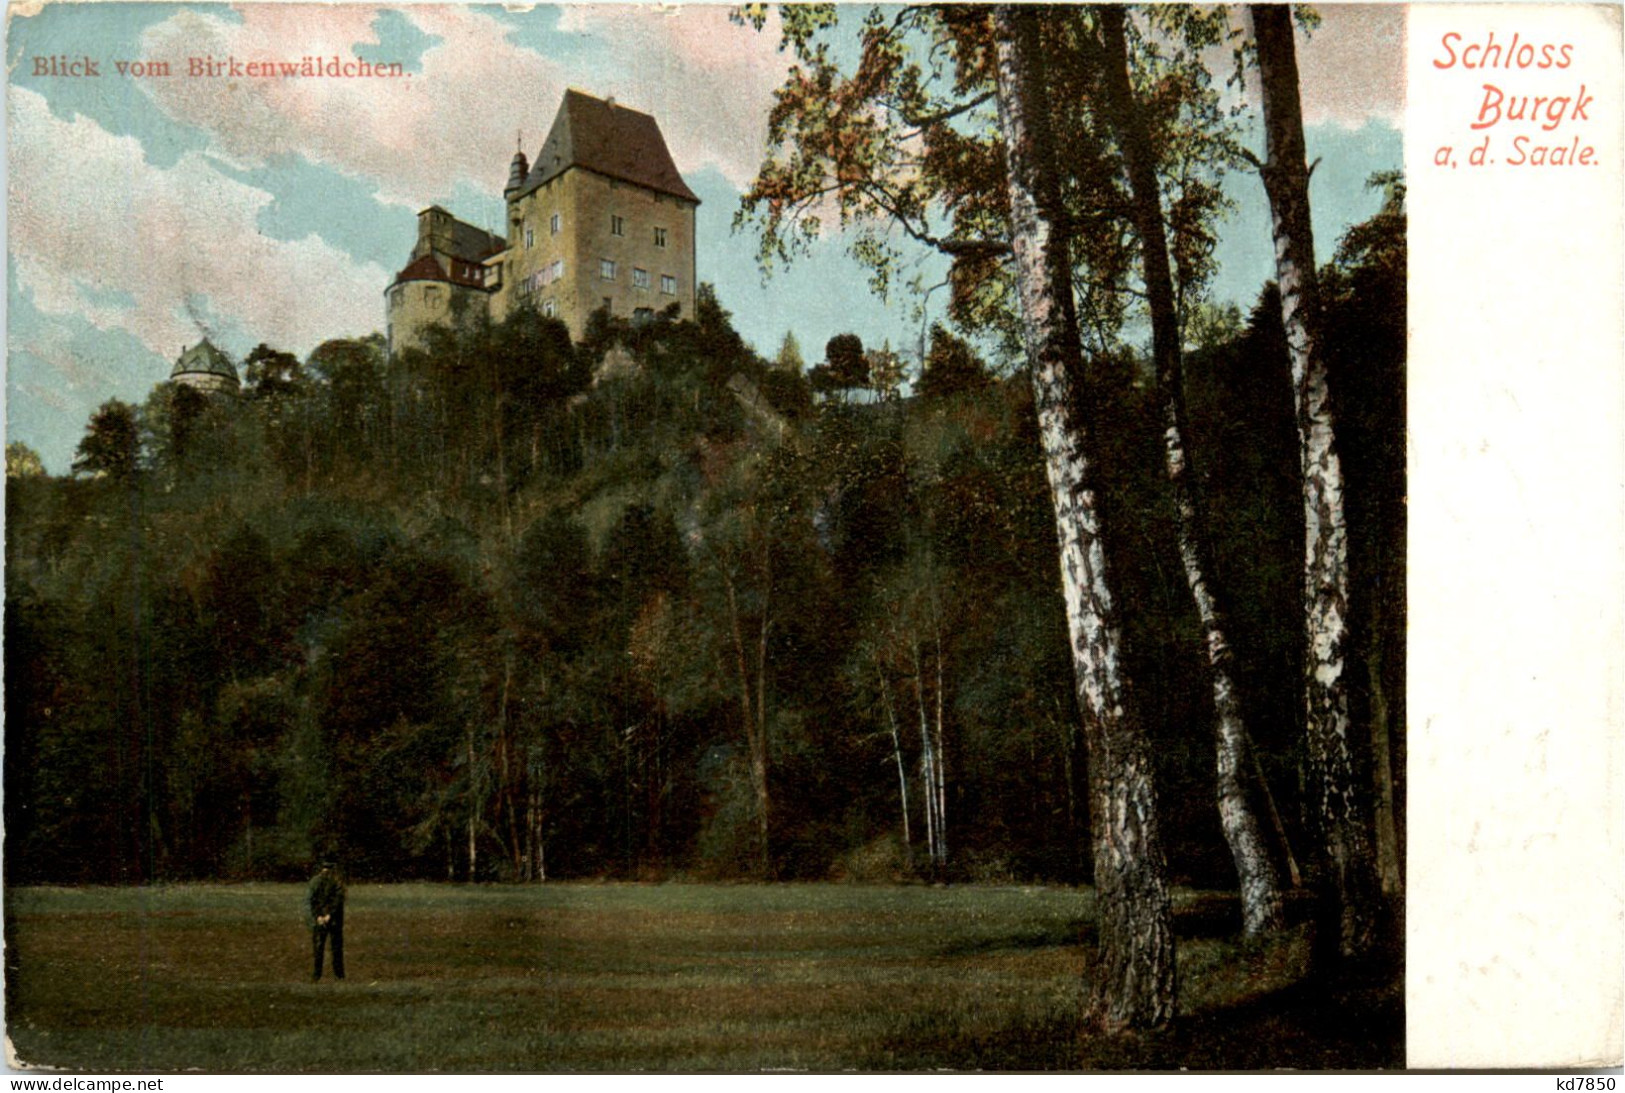 Burgk, Schloss Burgk An Der Saale, Blick Vom Birkenwäldchen - Schleiz